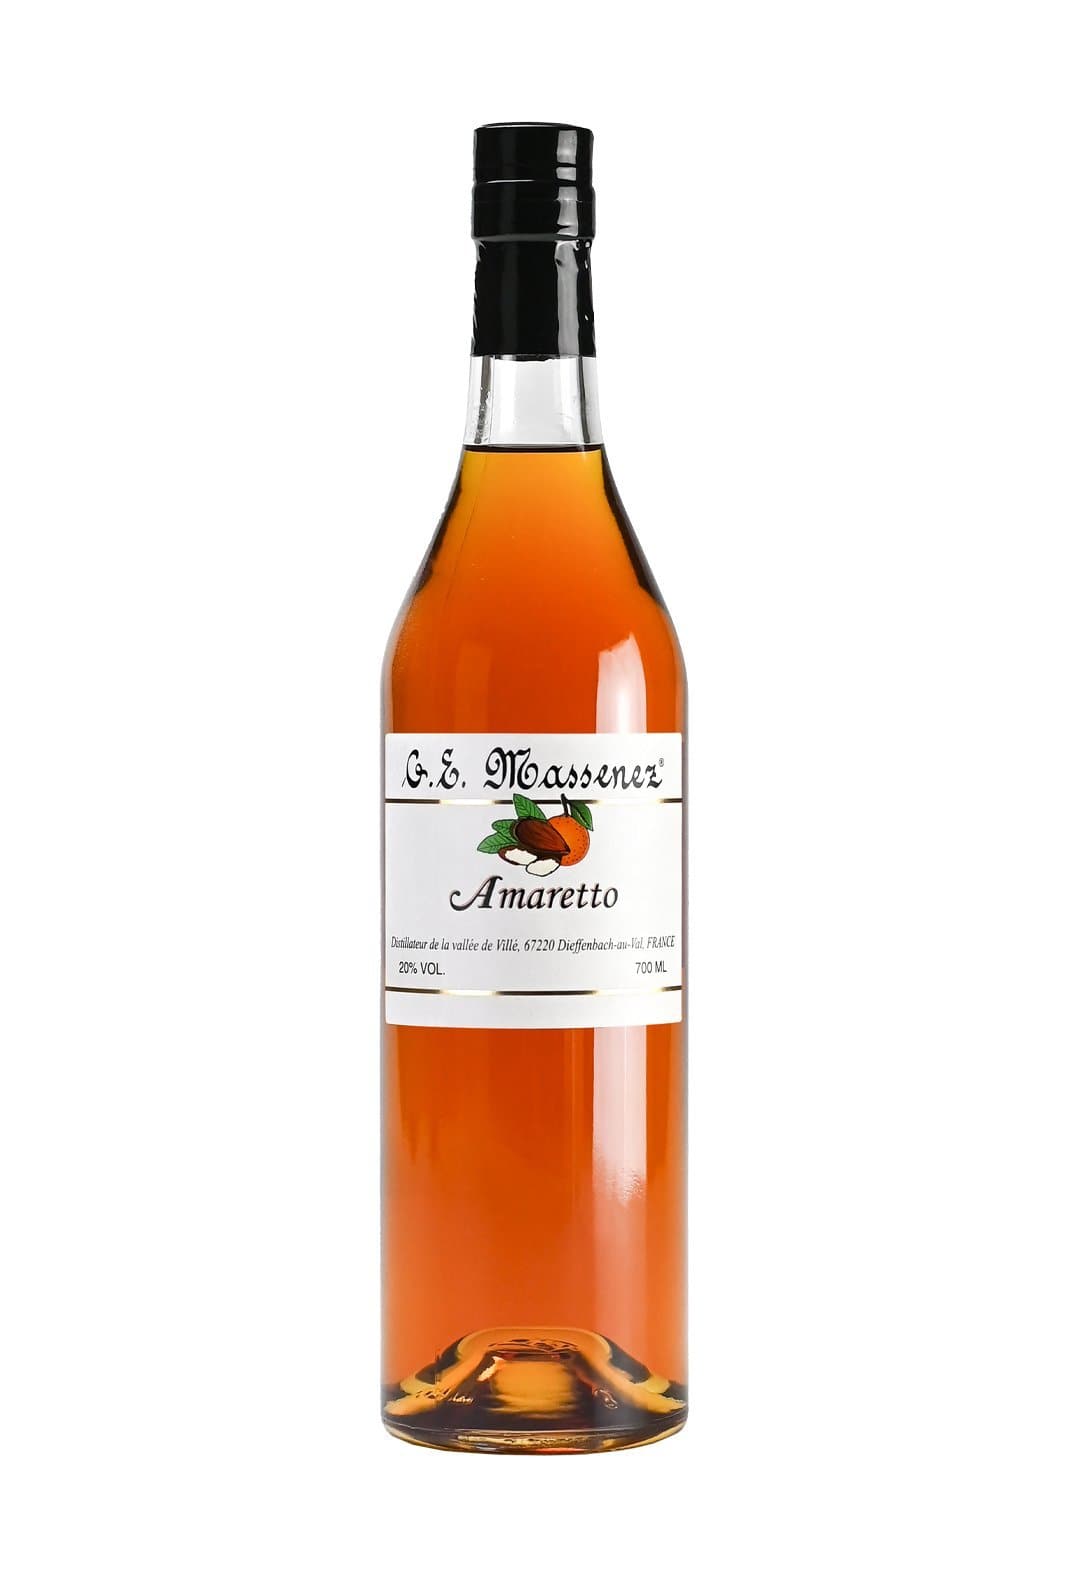 Massenez Liqueur Amaretto (Almond) 20% 700ml | Liqueurs | Shop online at Spirits of France